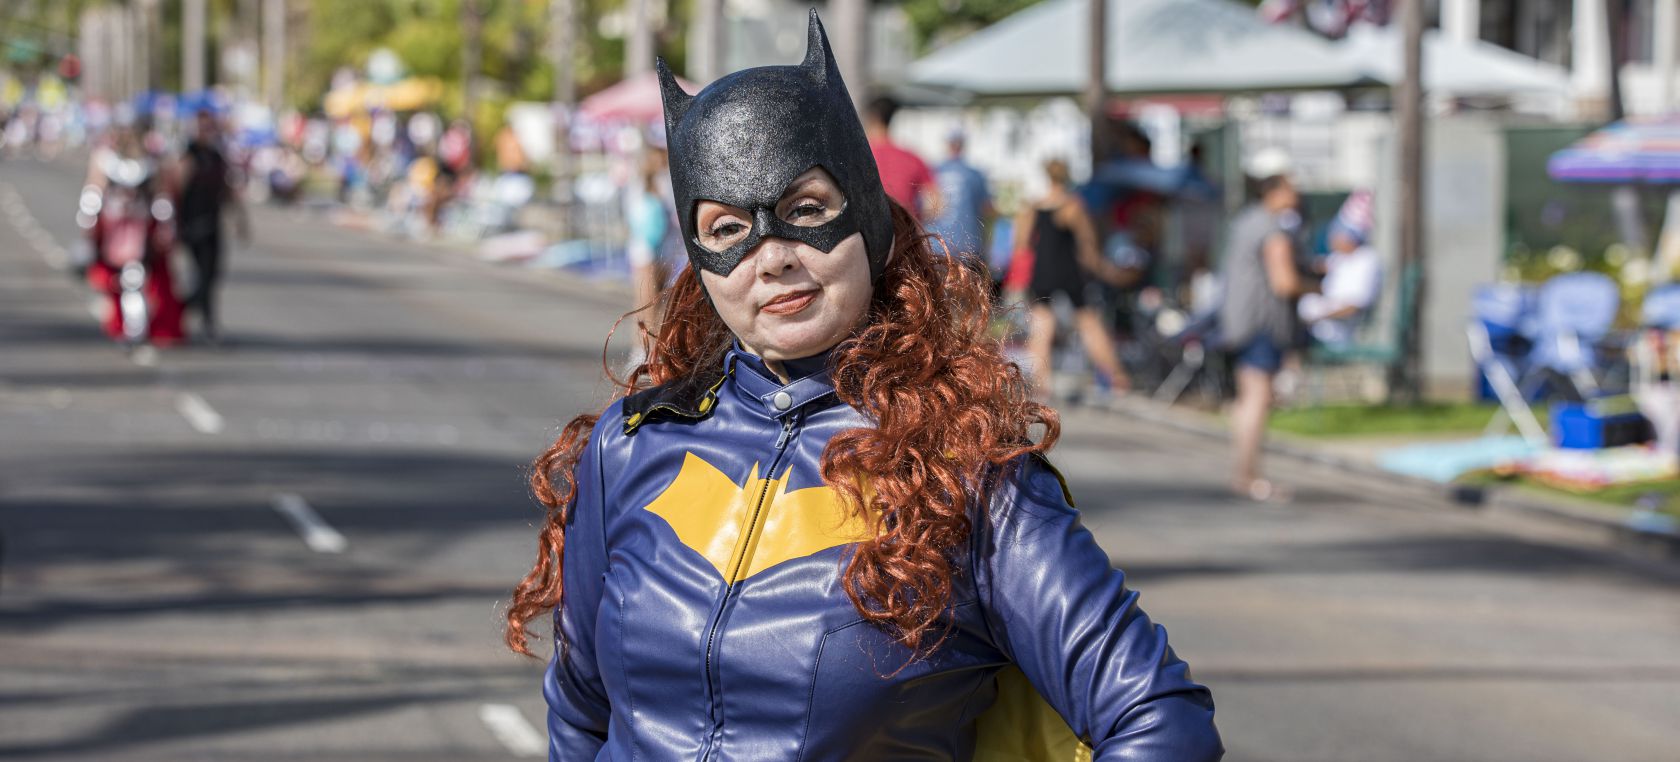 Warner Bros cancela ‘Batgirl’ a pesar de estar terminada y haber costado 90 millones de dólares